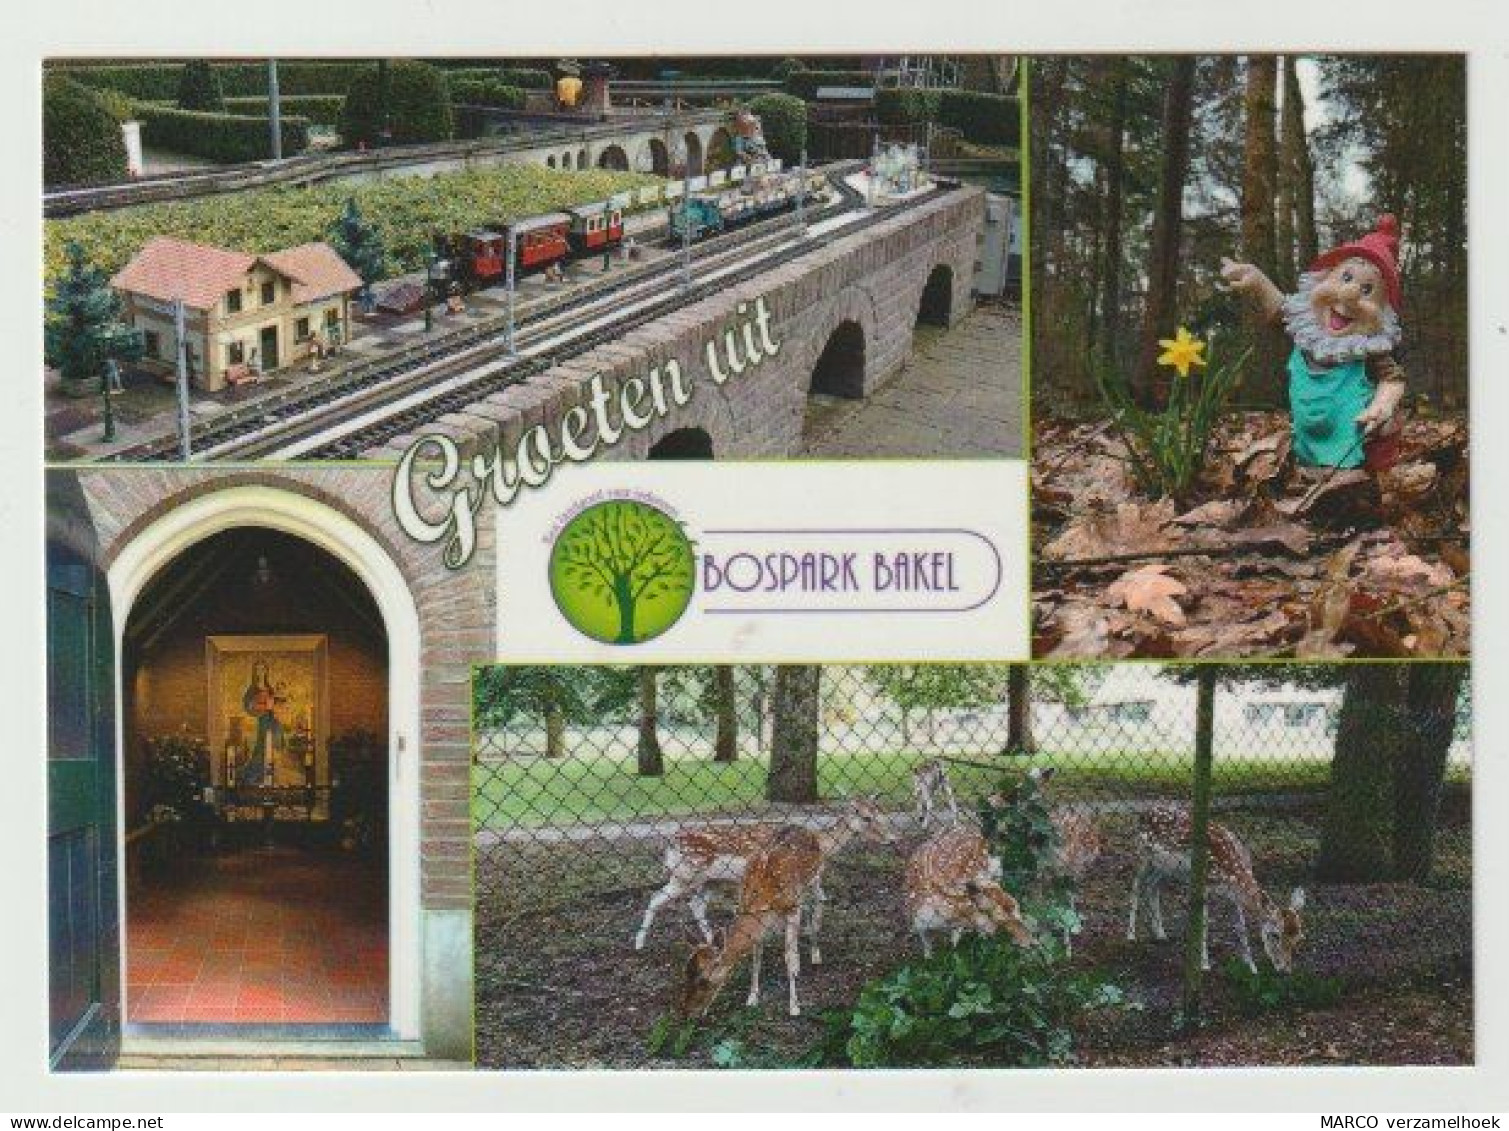 Ansichtkaart-postcard Bospark Bakel (NL) - Gemert